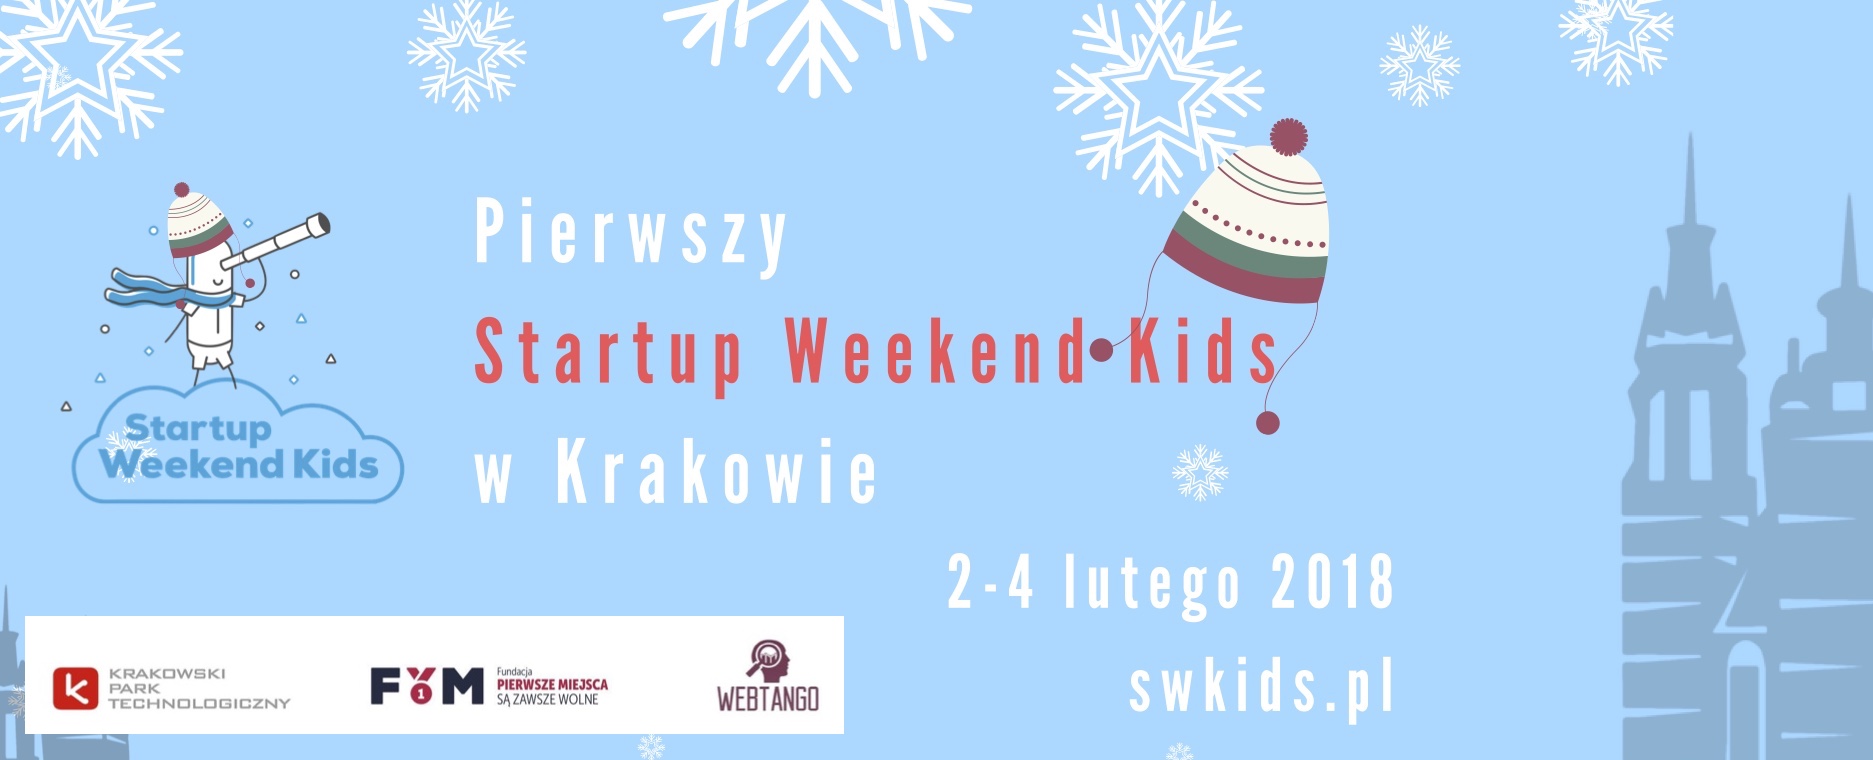 startup-weekend-kids-krakow-luty-2018